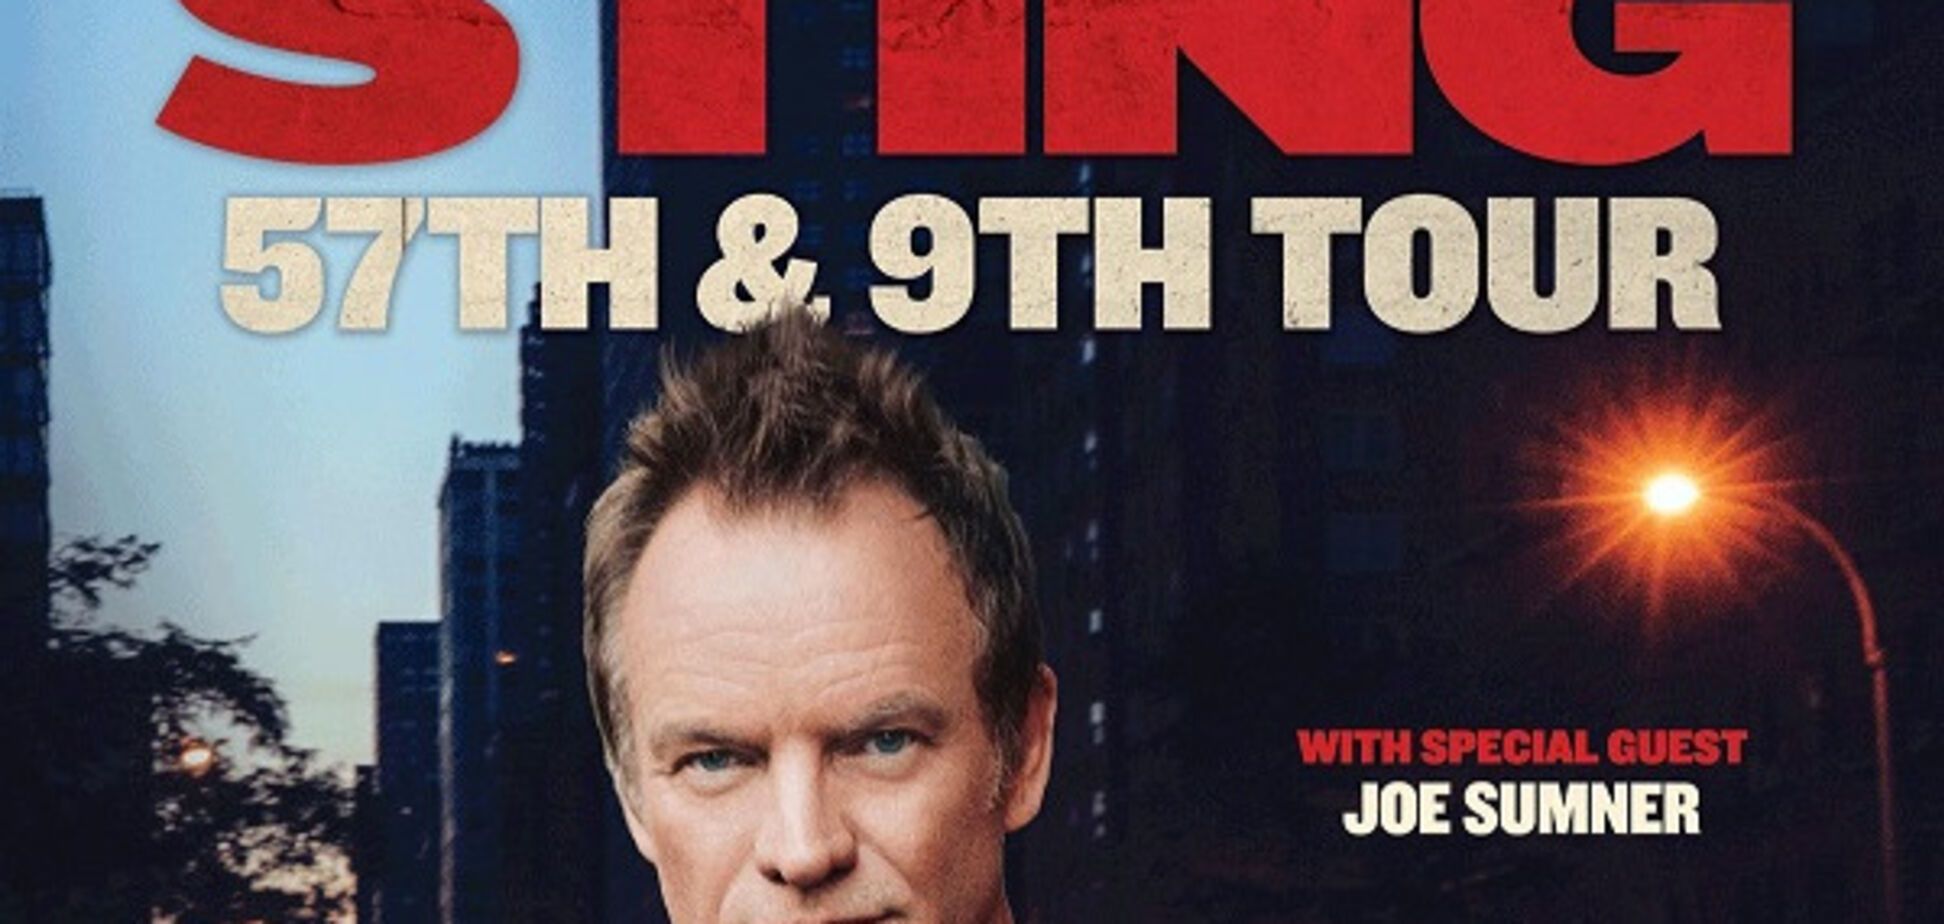 Всемирно известный певец и музыкант Sting выступит в Киеве